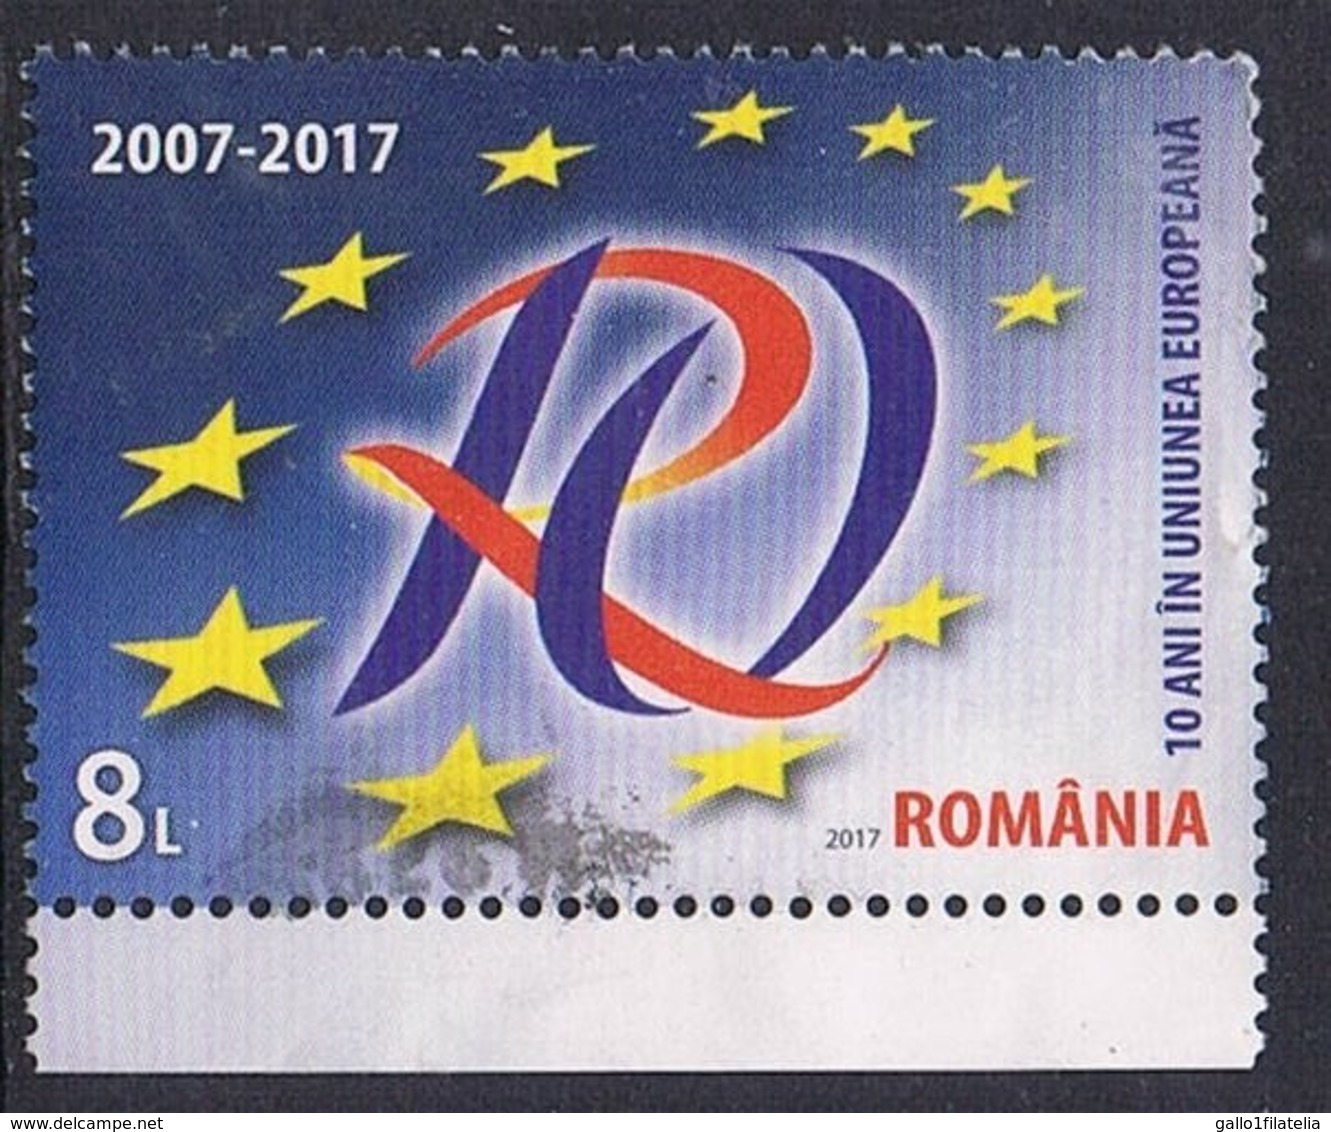 2017 - ROMANIA - 10 ANNI NELL'UNIONE EUROPEA / 10 YEARS IN THE EUROPEAN UNION. USATO / USED. - Oblitérés